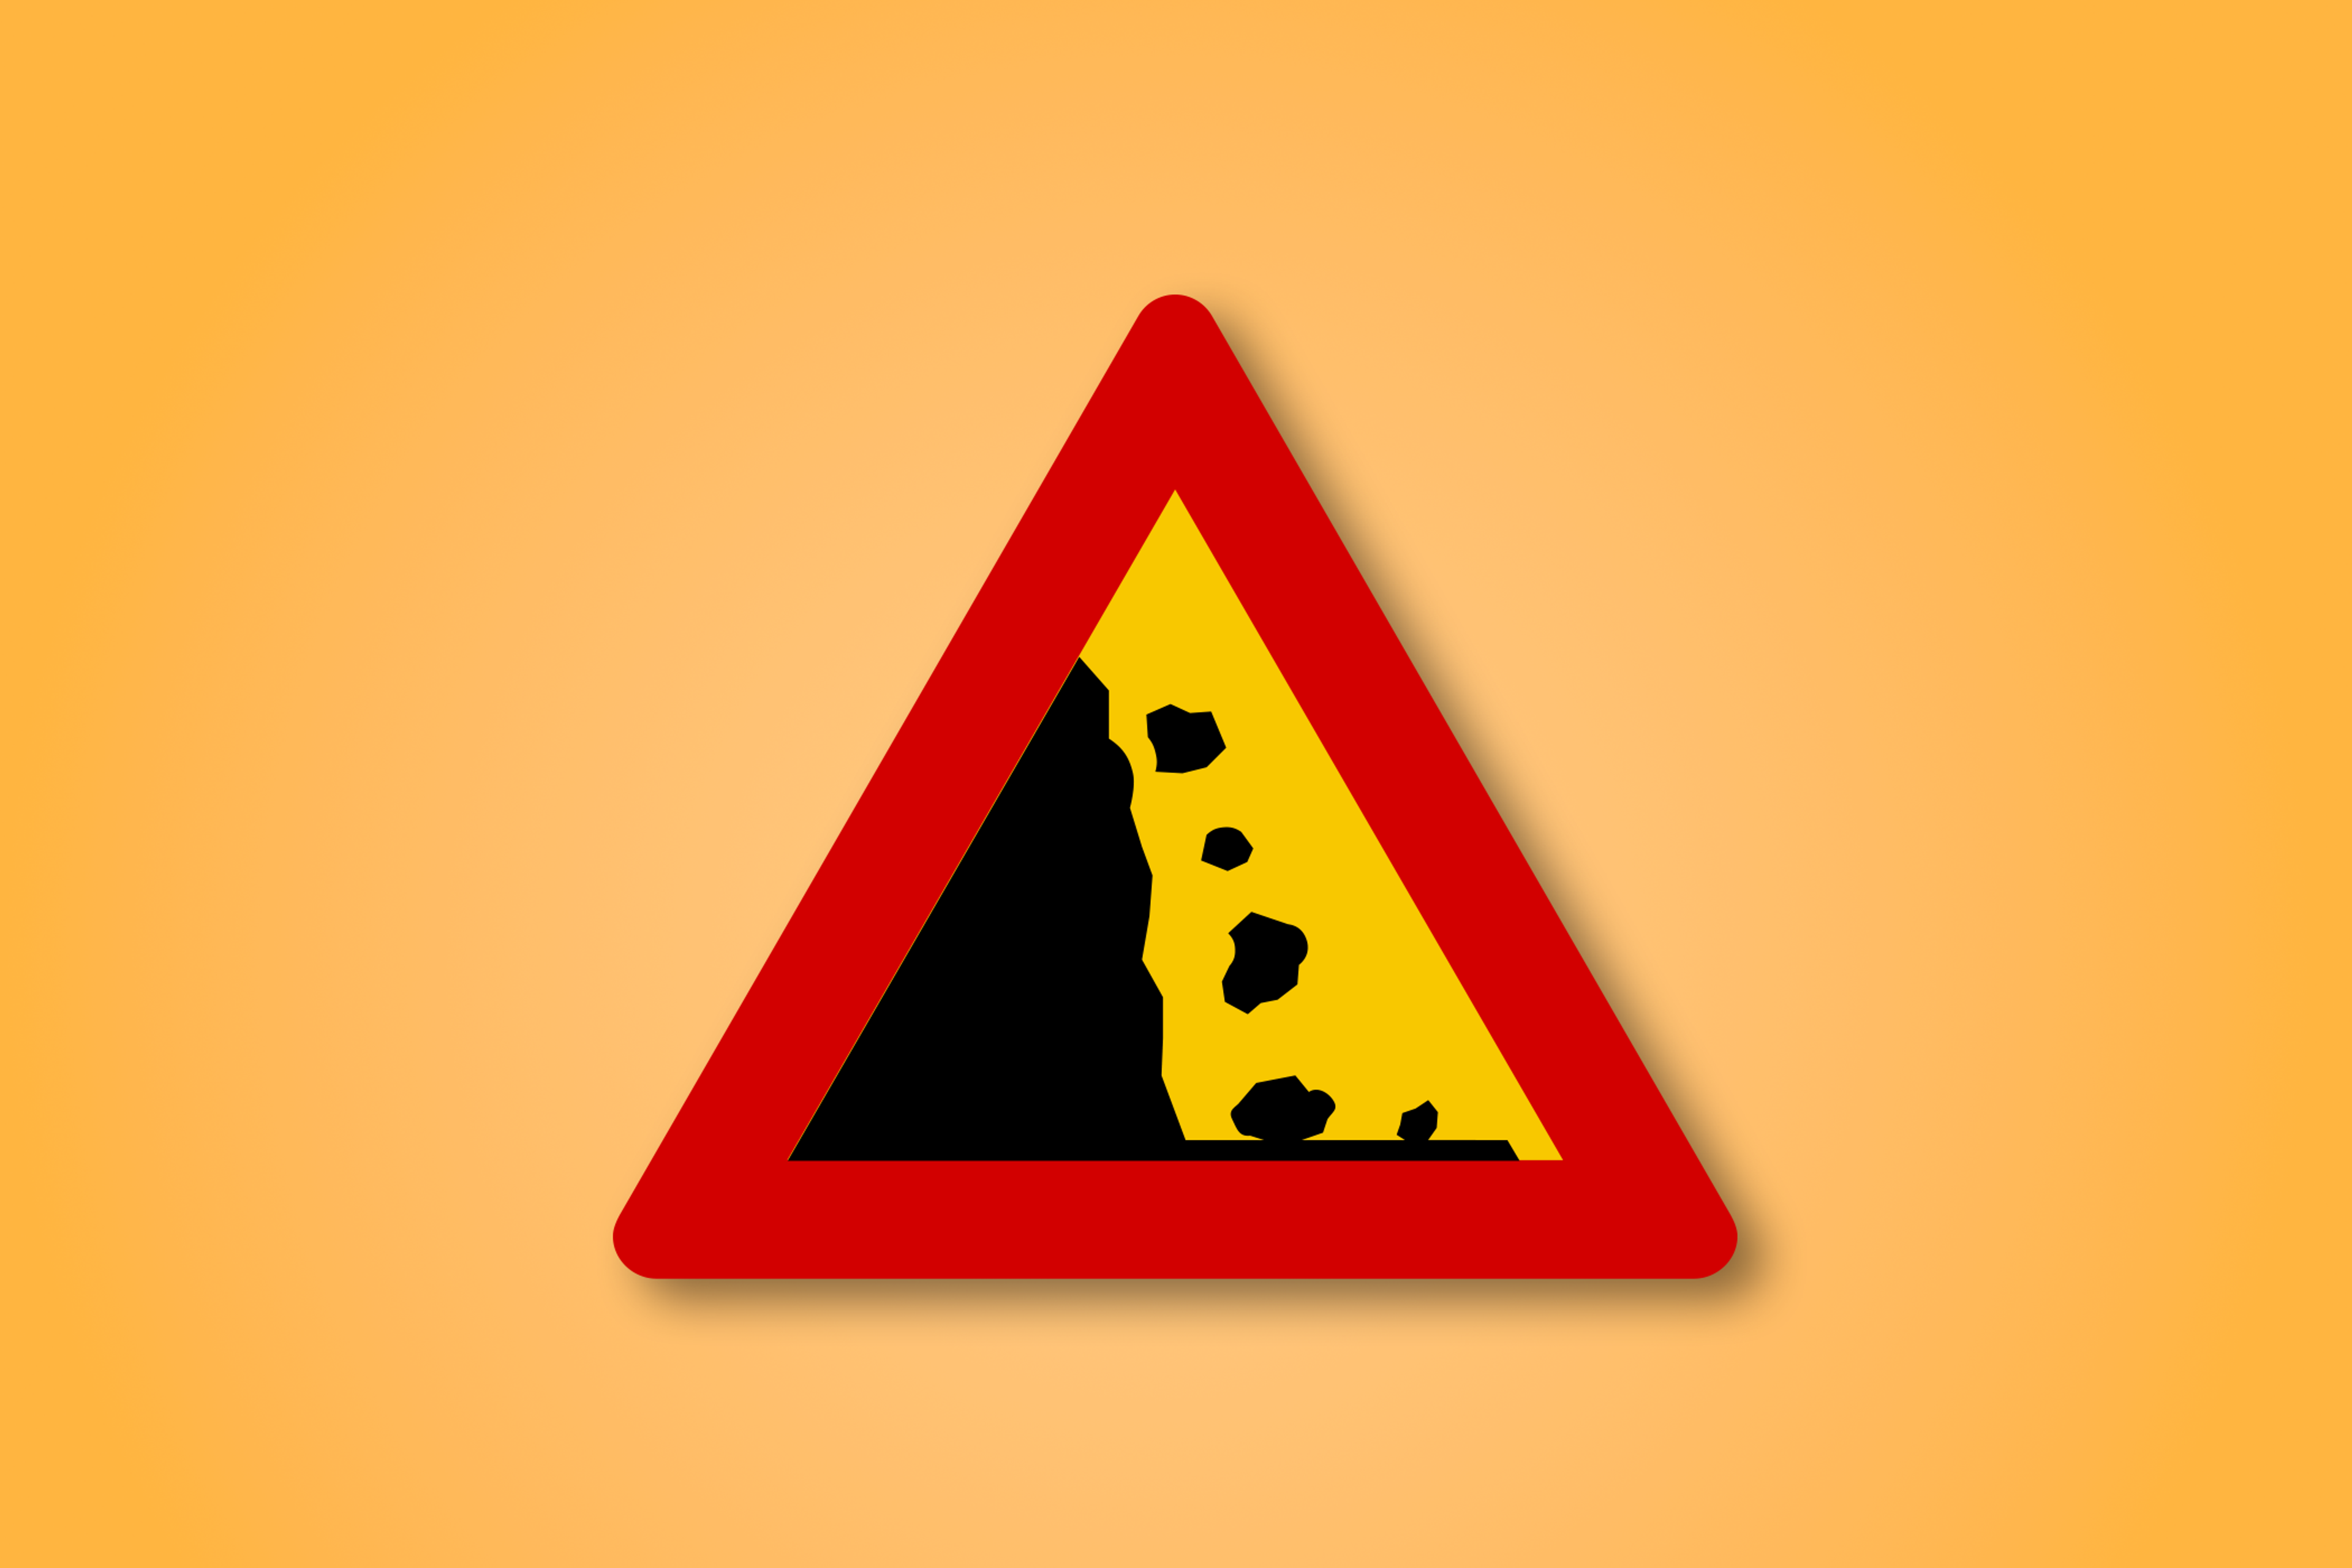 一块红色和黄色的三角形路标，中间有"滚石"图标。这个路标表示前方有滚石。